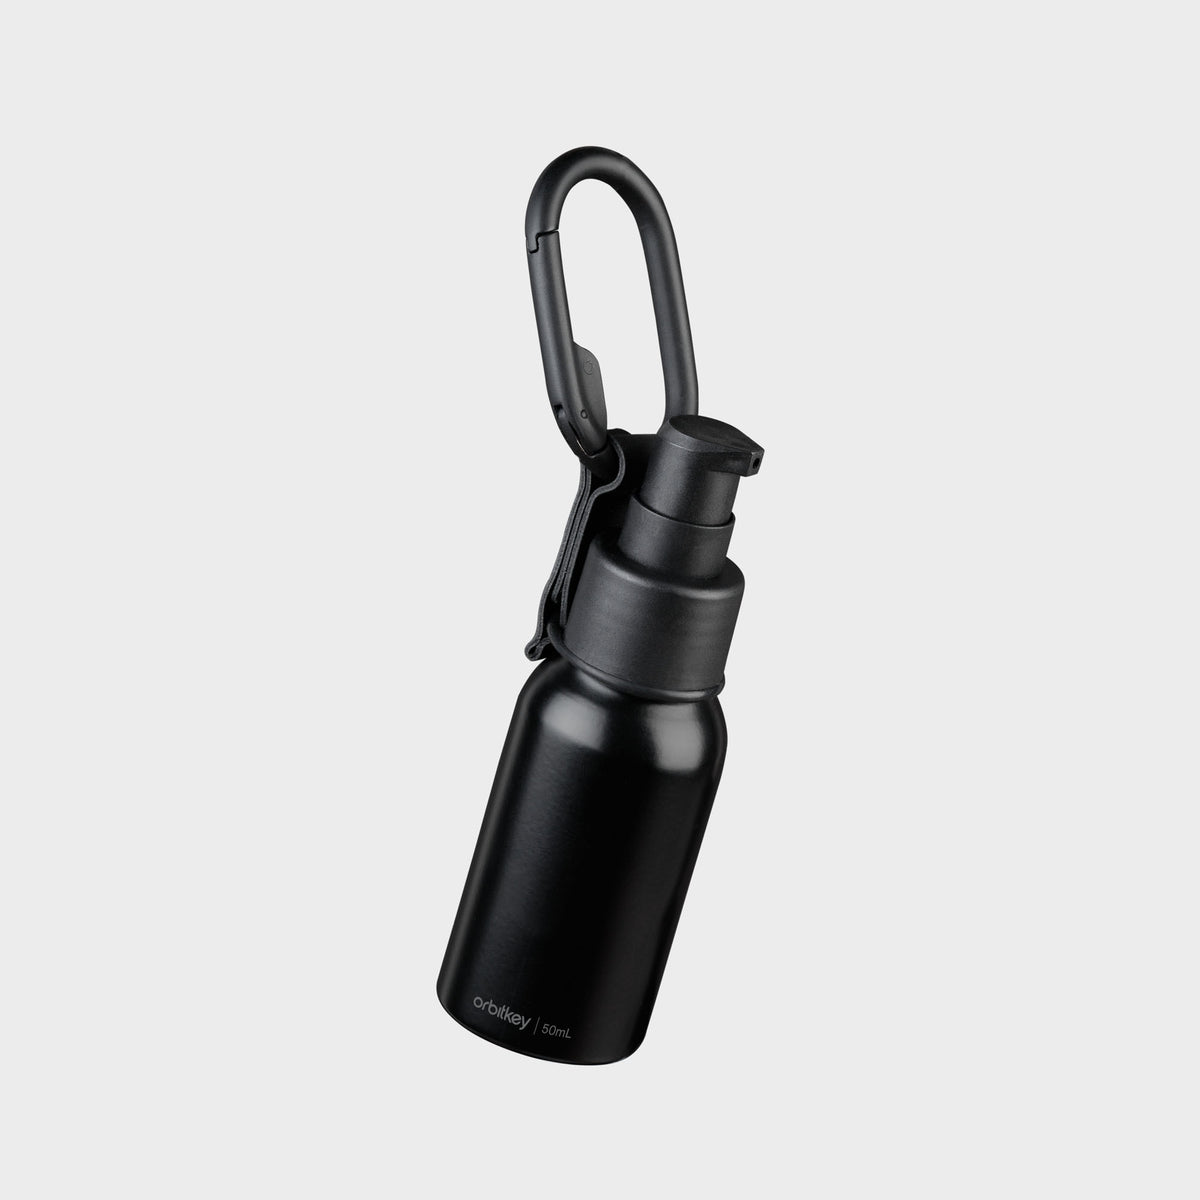 CLICK water bottle holder, black